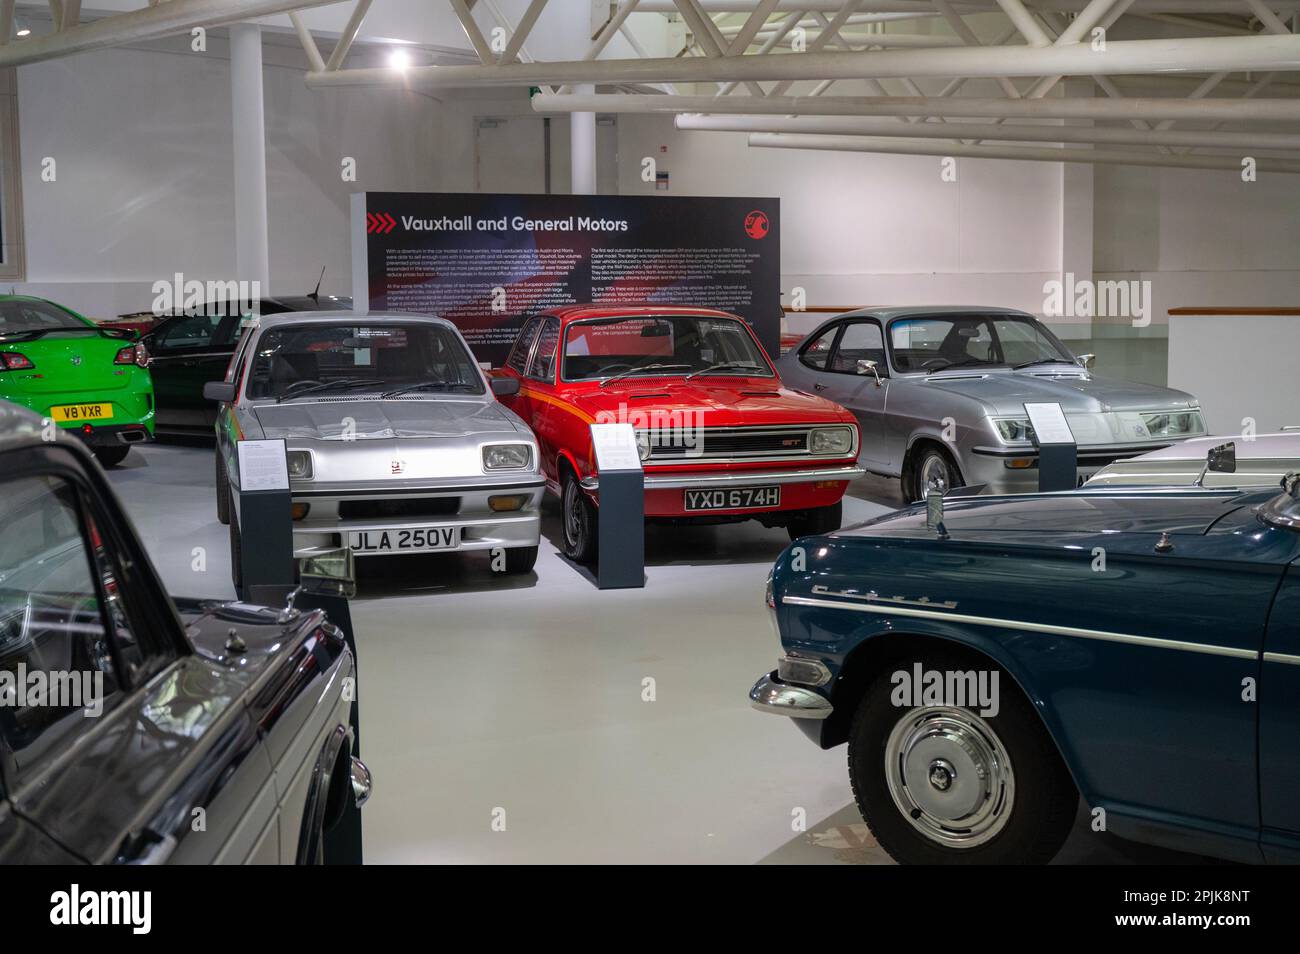 Coches Vauxhall en el museo British Motor Heritage Foto de stock